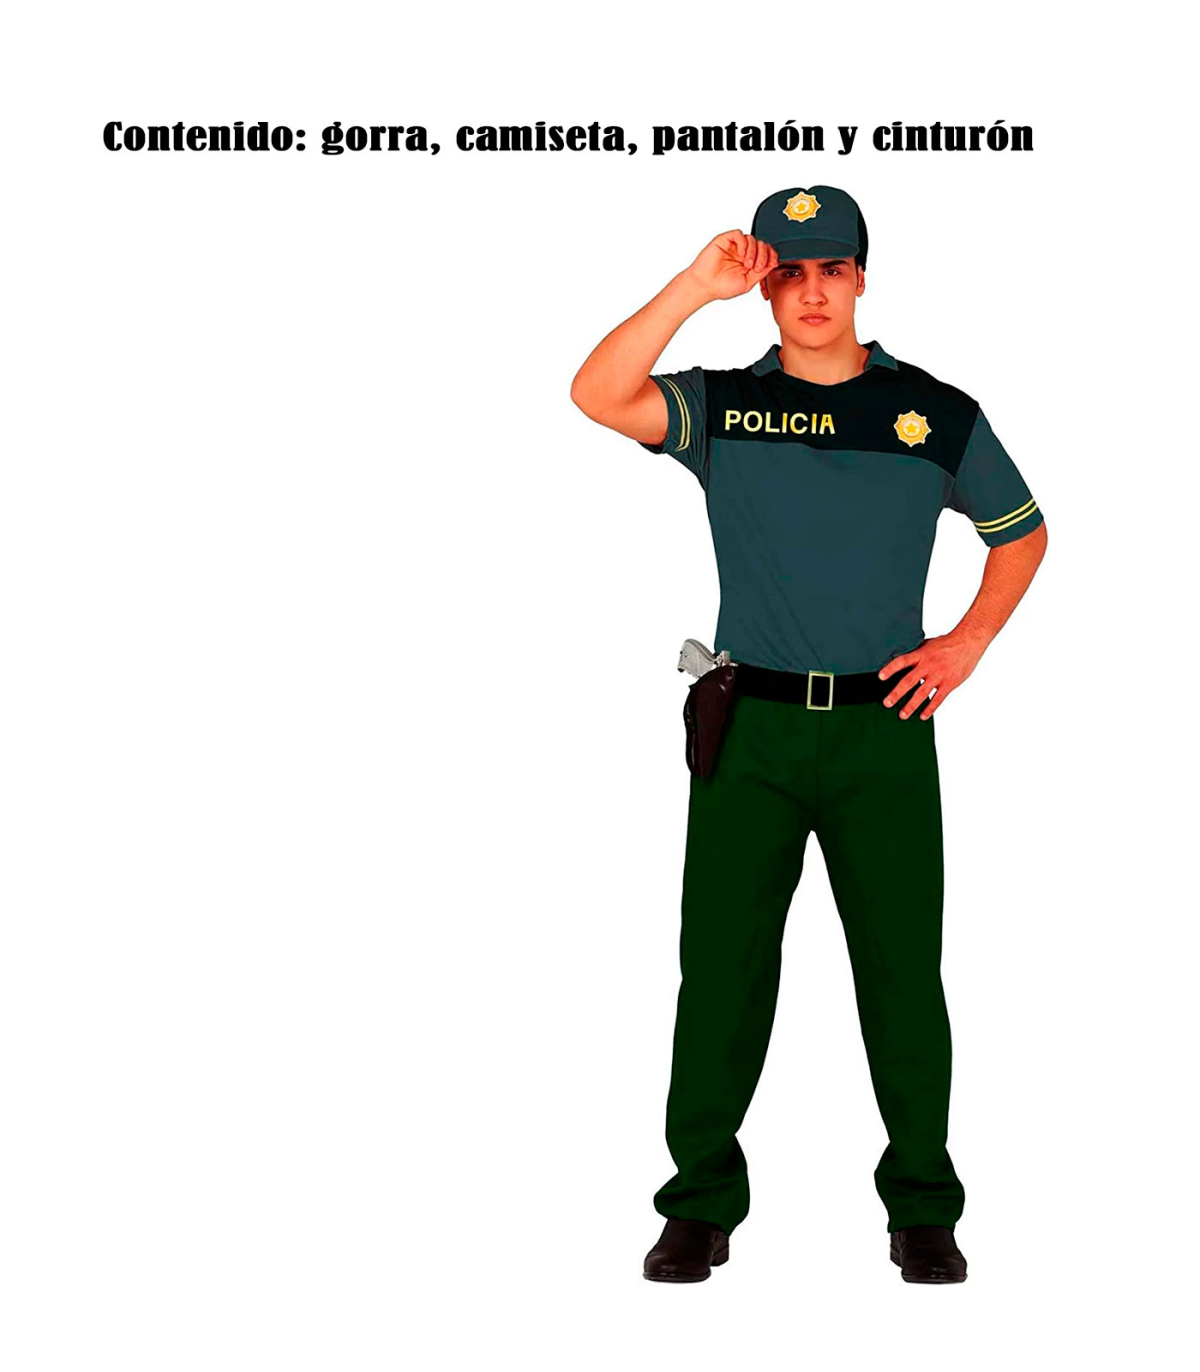 Tradineur - Disfraz de policía para hombre, manga corta, 100% poliéster,  incluye gorra, camiseta, pantalón y cinturón, atuendo d